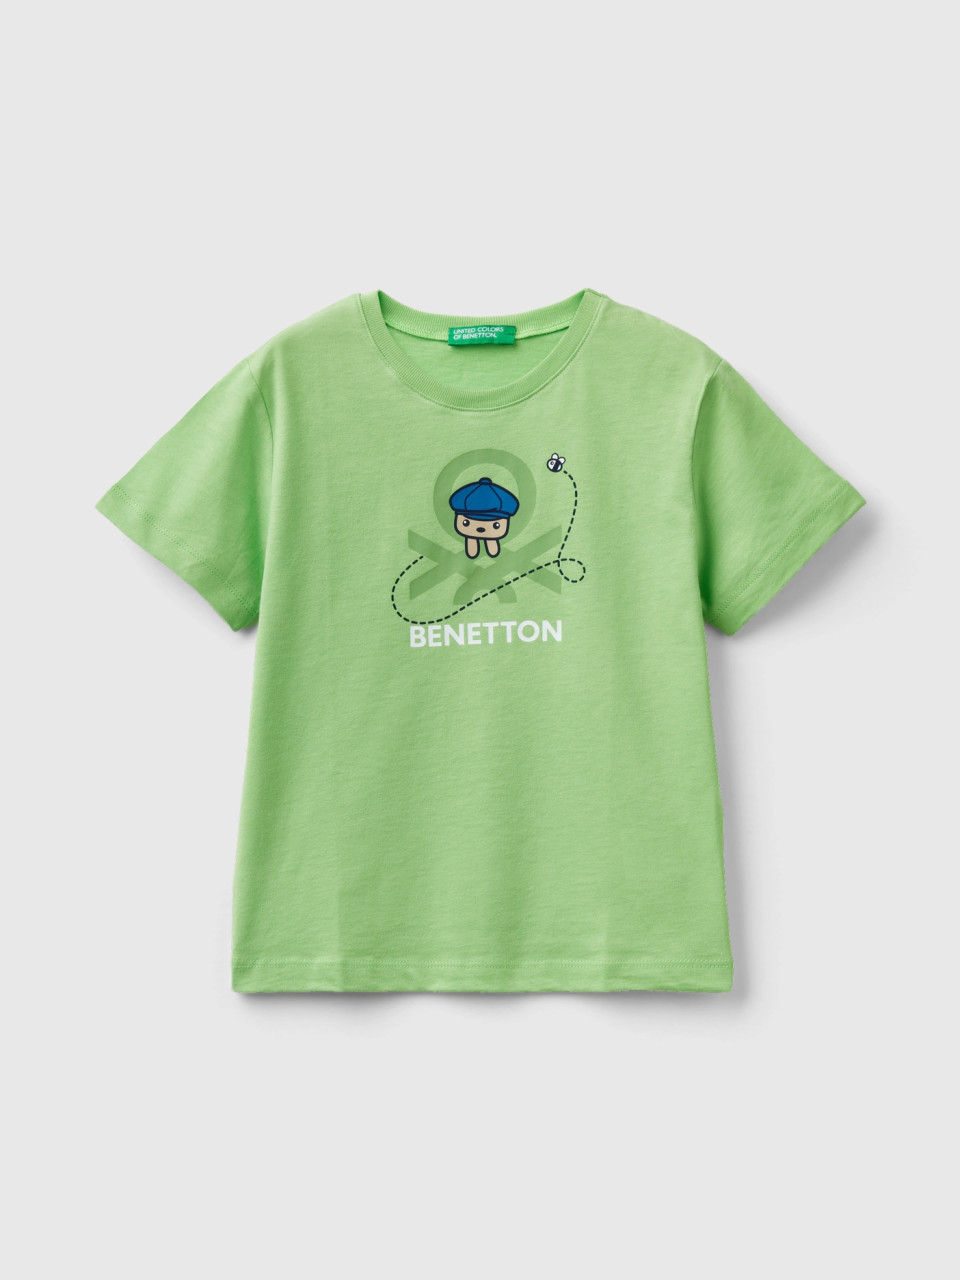 Benetton, T-shirt 100% Cotone Bio Con Stampa, Verde Chiaro, Bambini